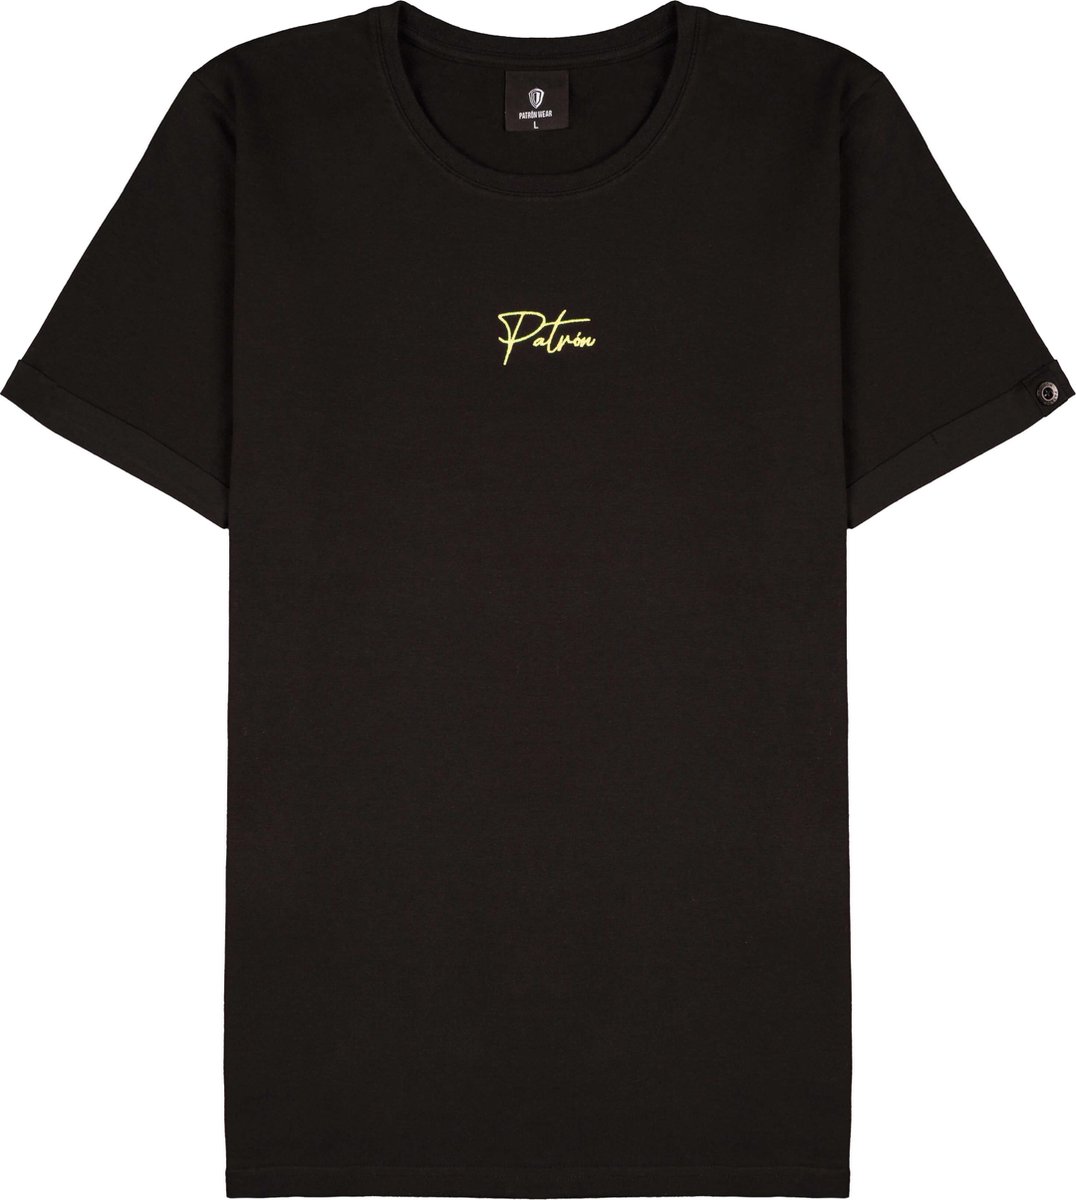 Patrón Wear - Emilio T-shirt Black/Gold - Maat L